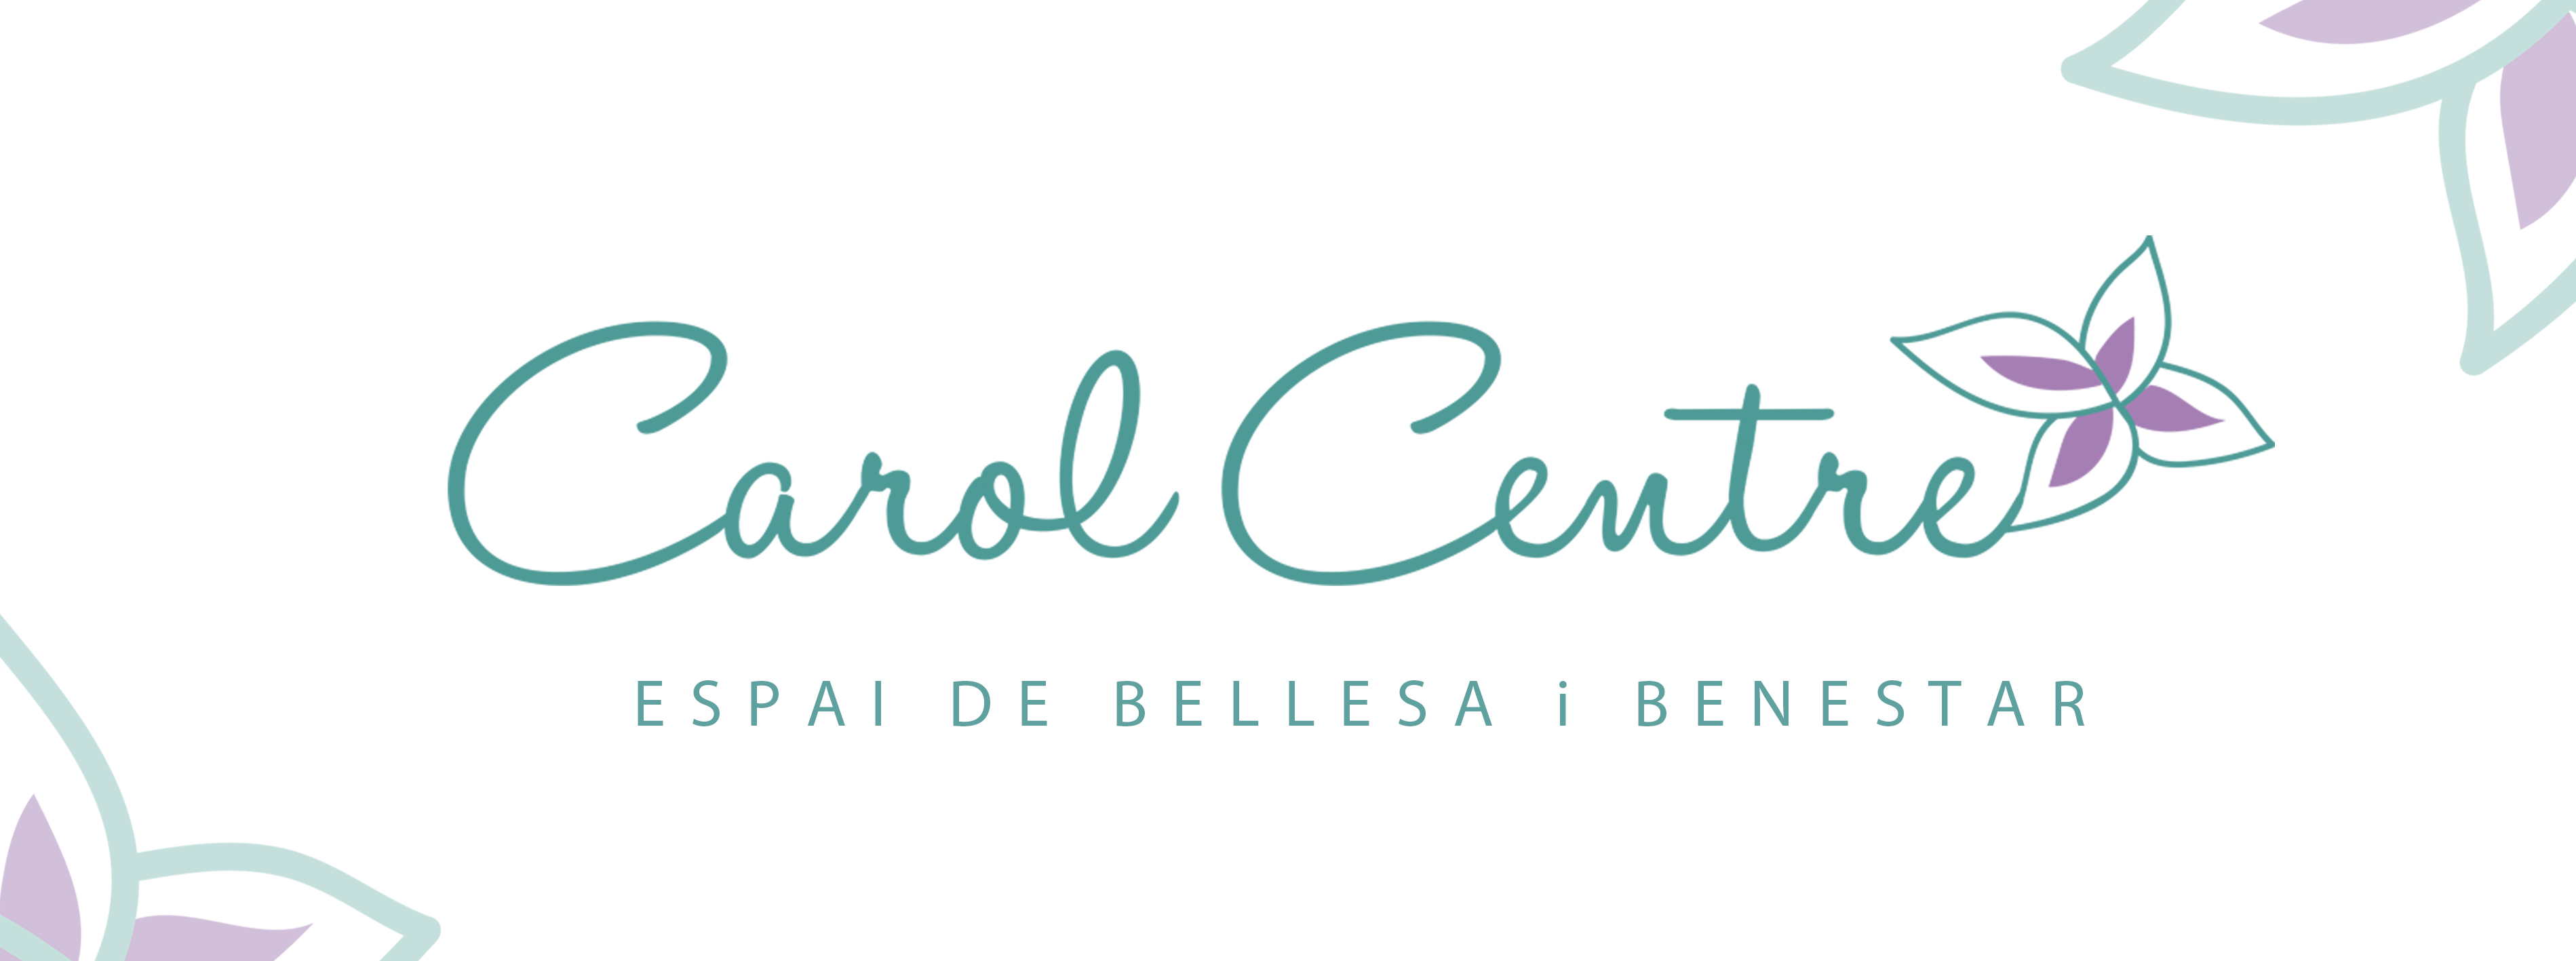 Carol Centre